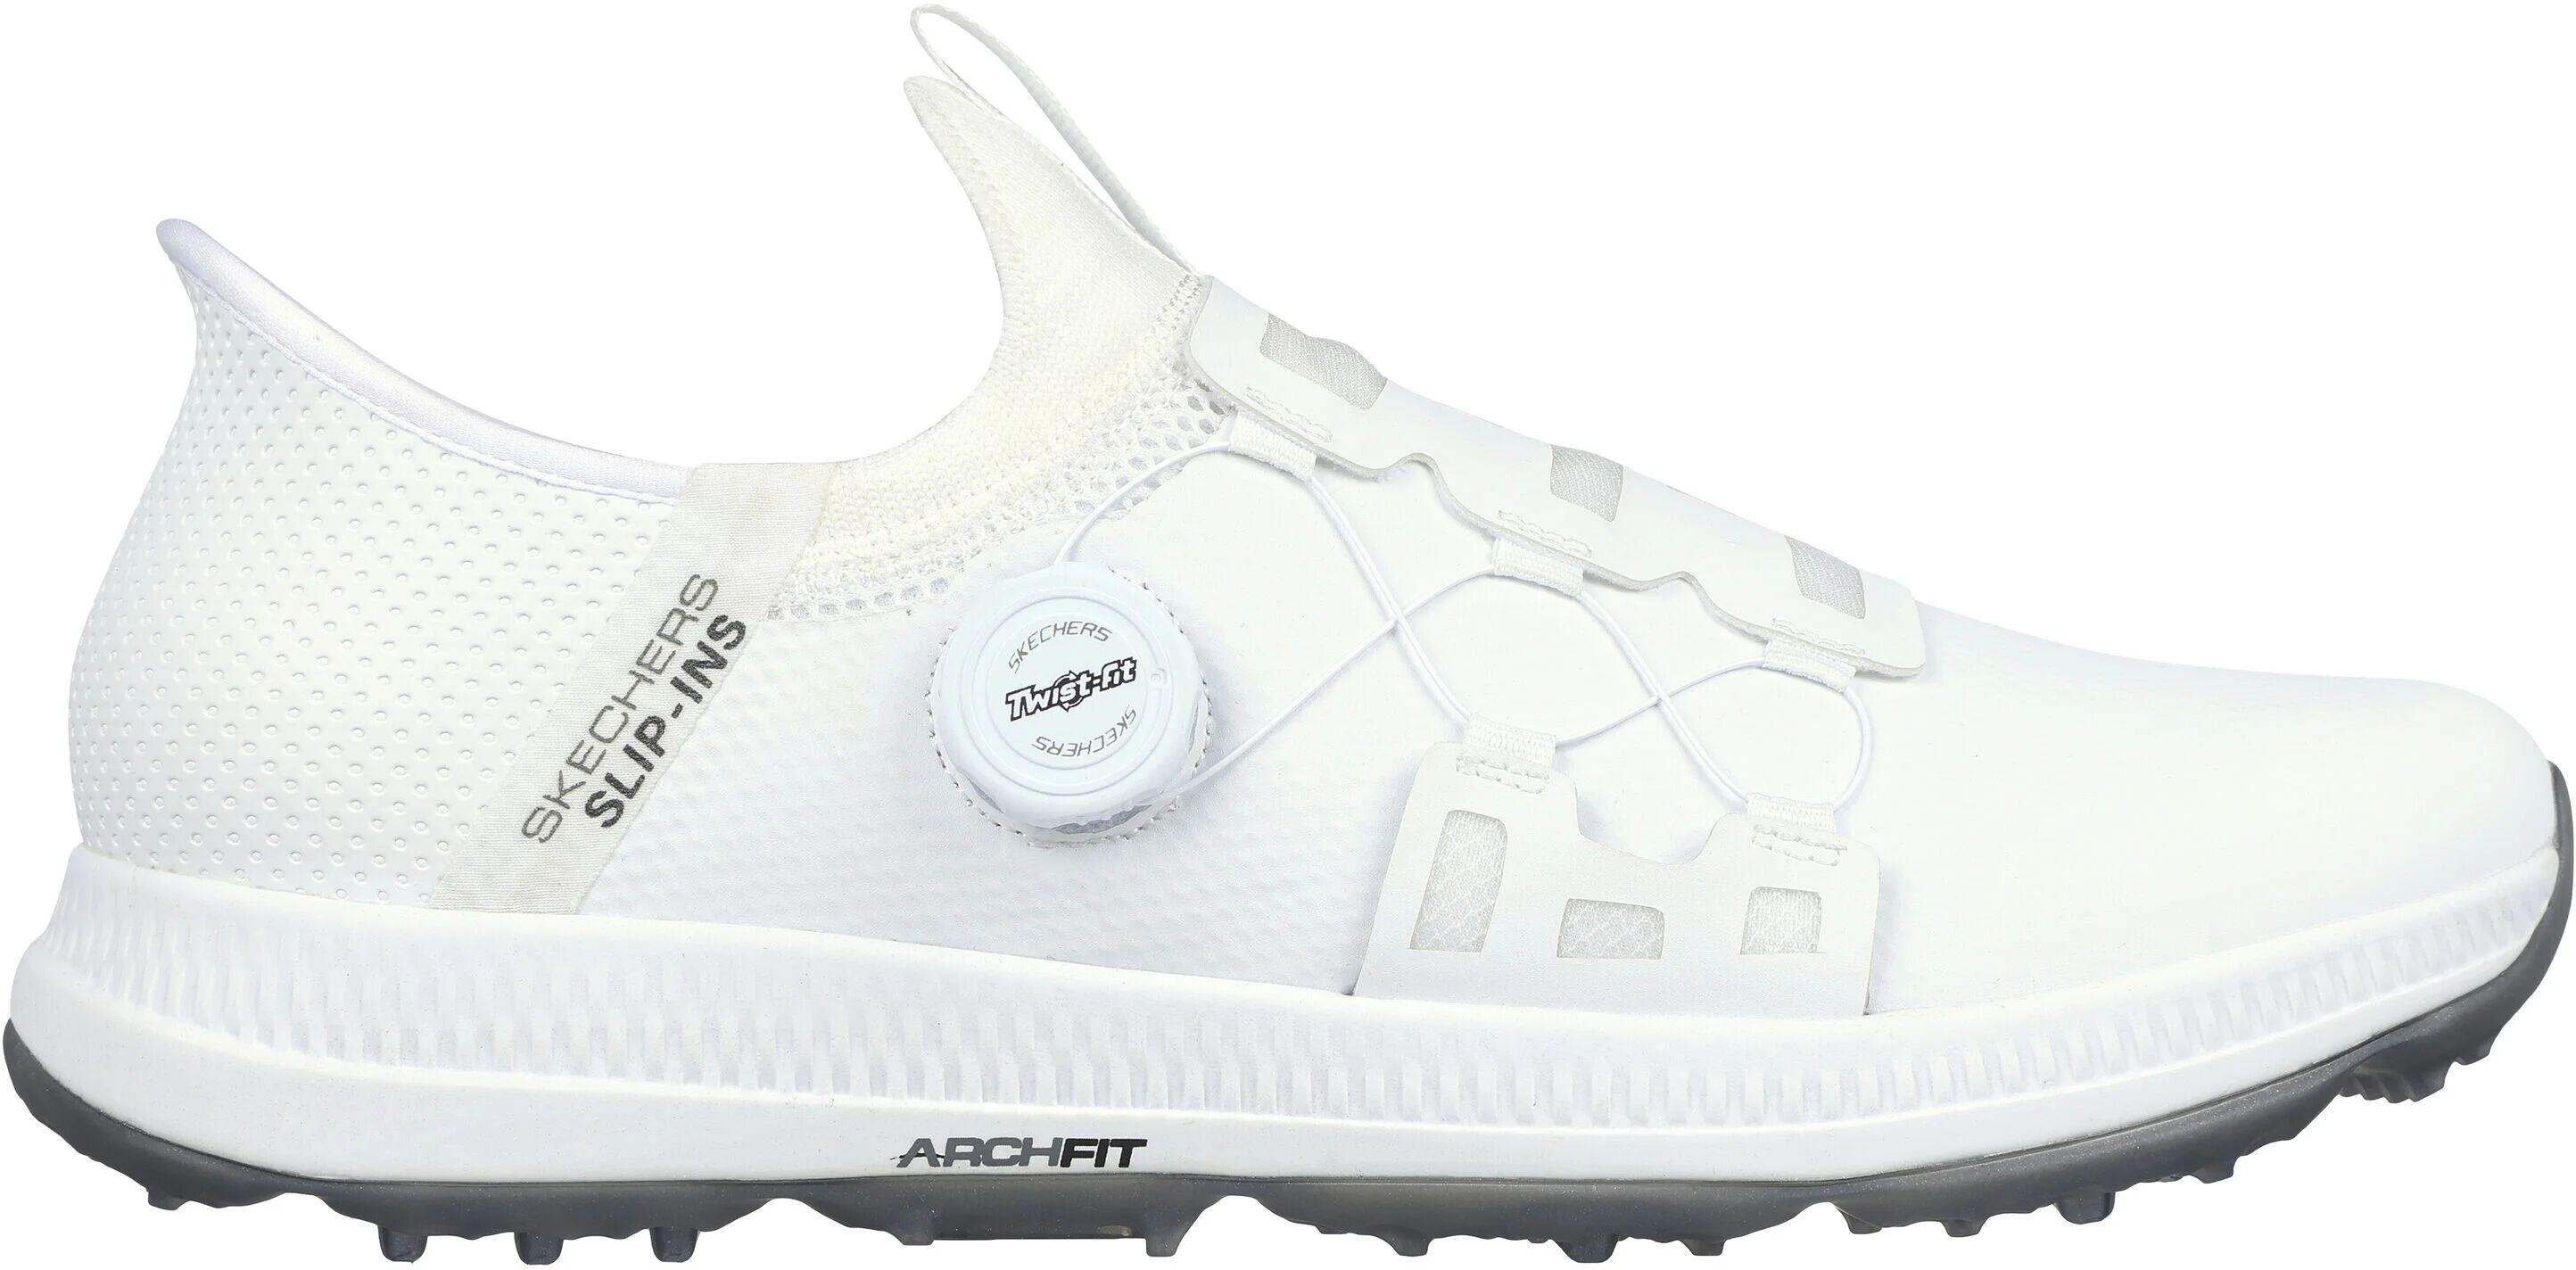 Skechers GO GOLF Elite 5 Slip In Golf Shoes - White - 11.5 - MEDIUM